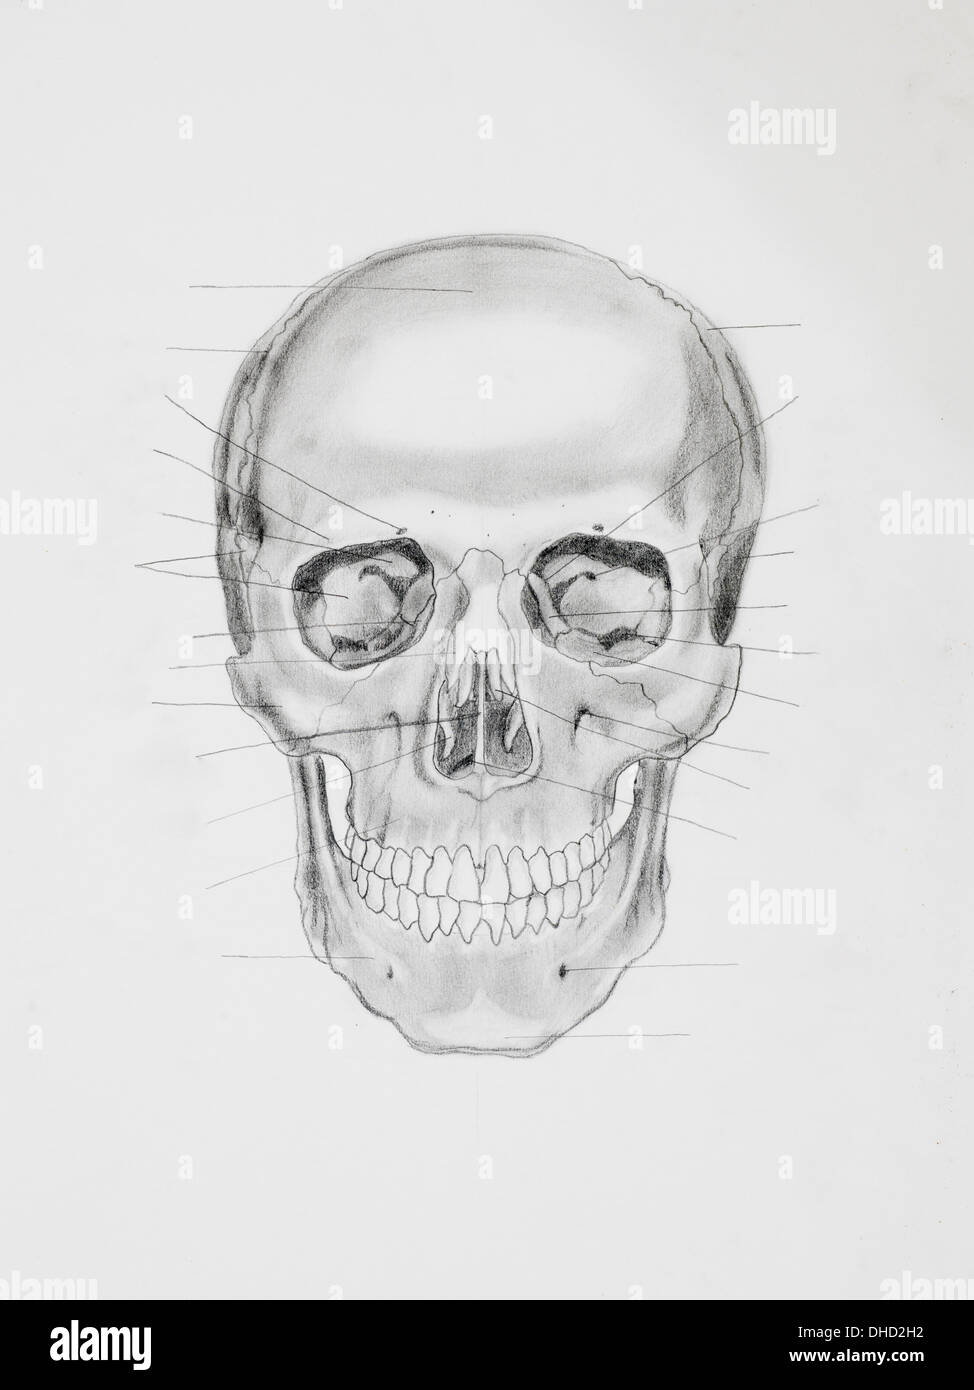 Illustration au crayon à la main, vue avant du crâne humain à la directive lignes orientées à des pièces osseuses, sur papier blanc Banque D'Images